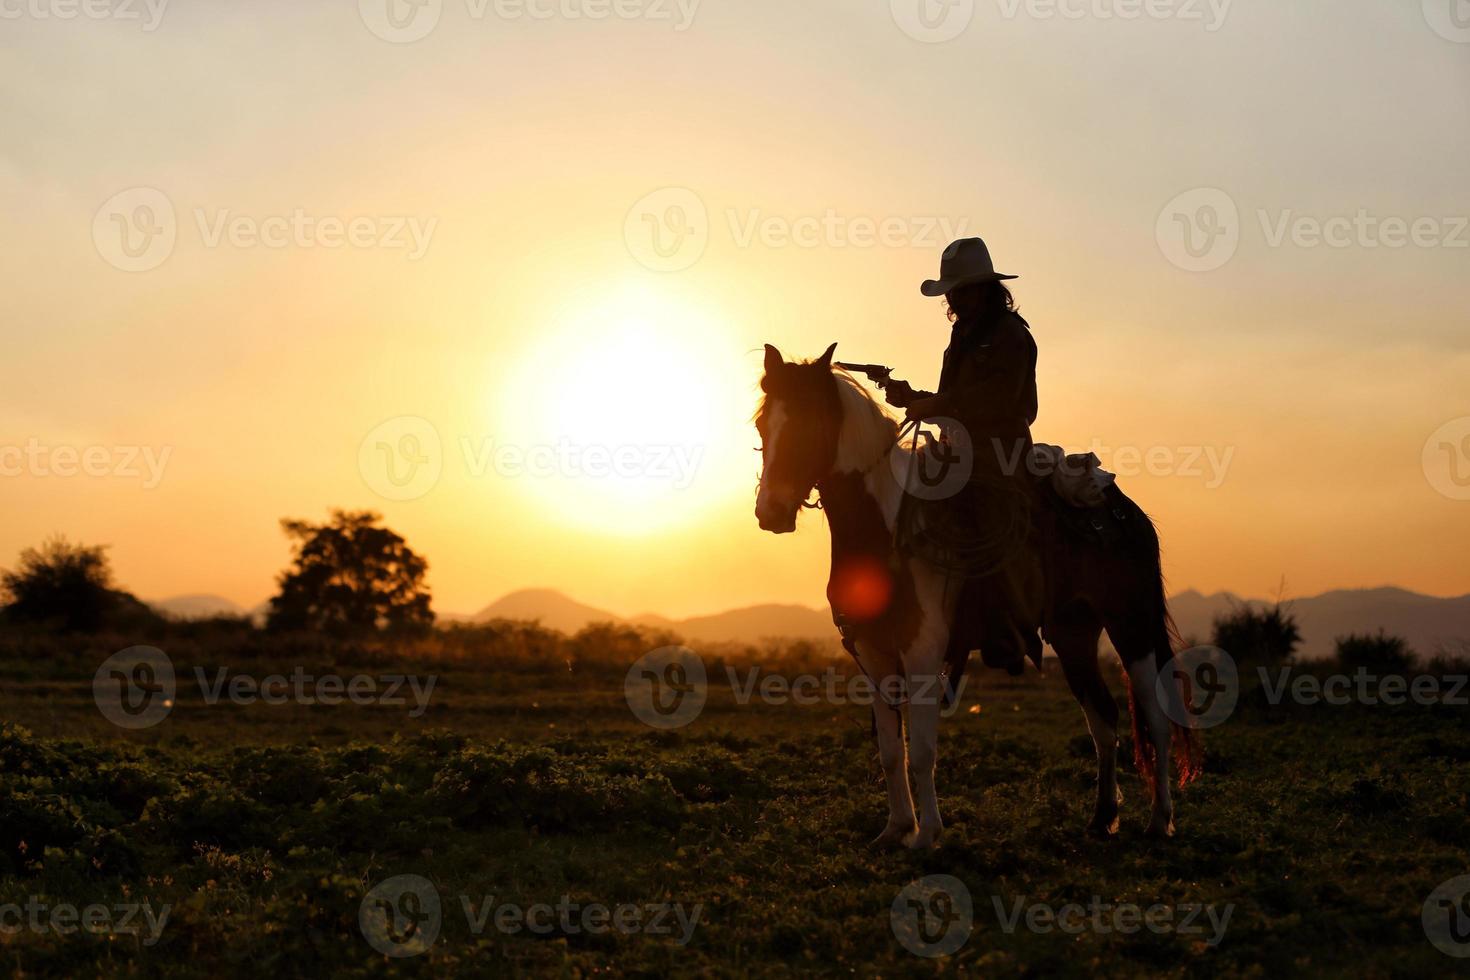 silhouette cowboy a cavallo contro un bel tramonto, cowboy e cavallo alle prime luci, montagna, fiume e stile di vita con sfondo di luce naturale foto